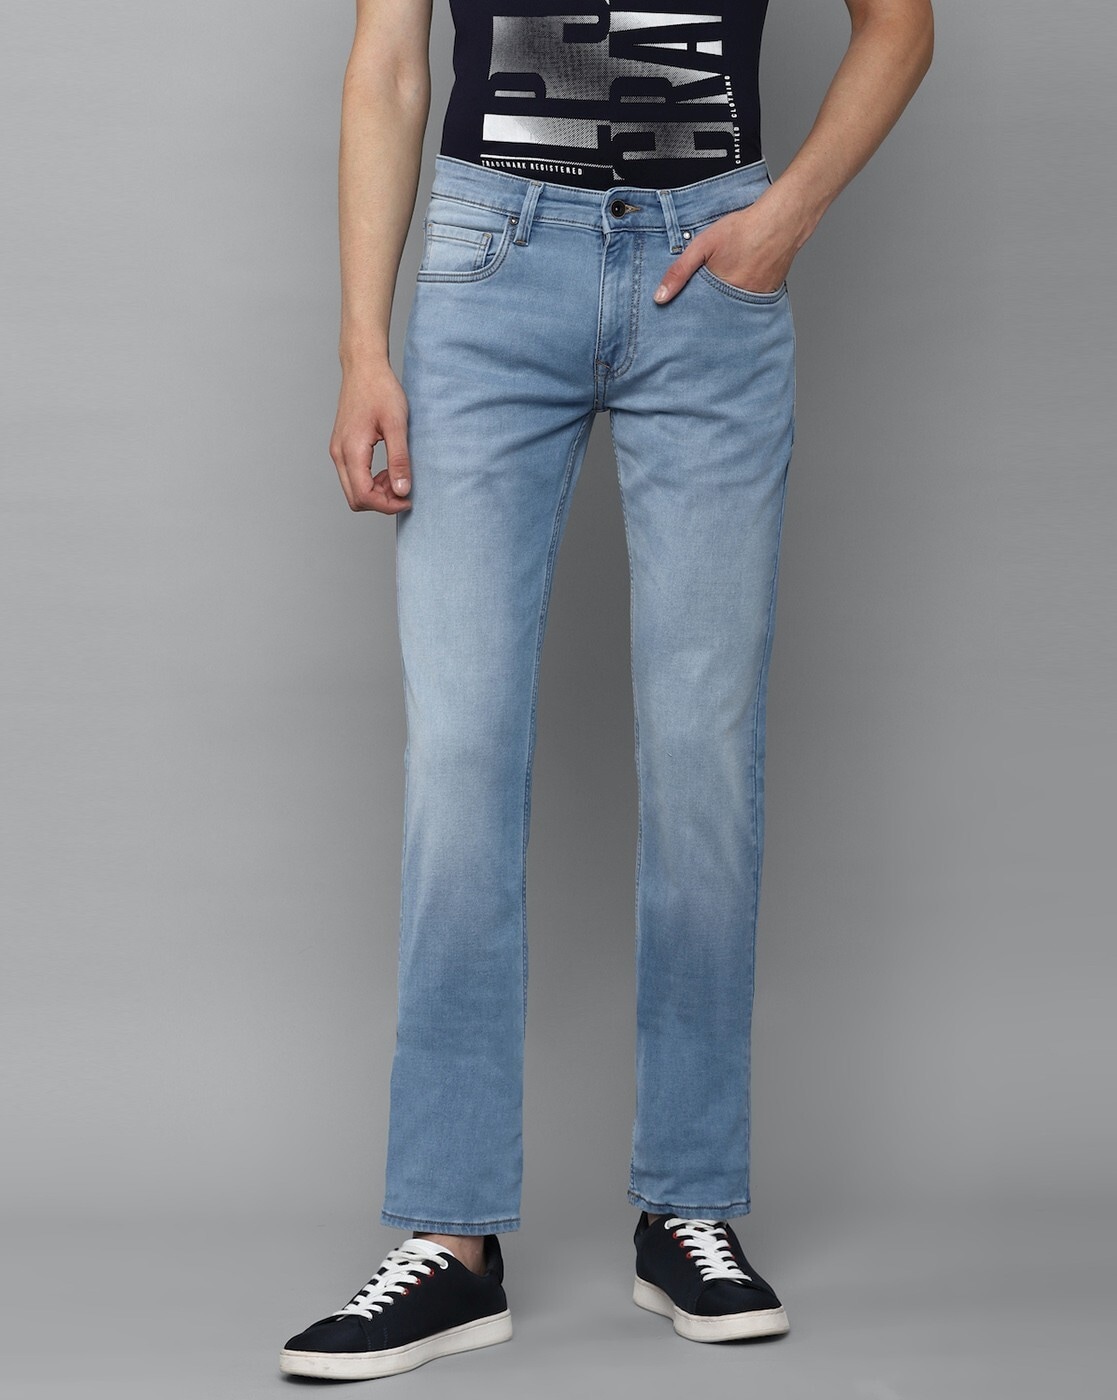 Louis Philippe Jeans Slim Men Light Blue Jeans - Buy Louis